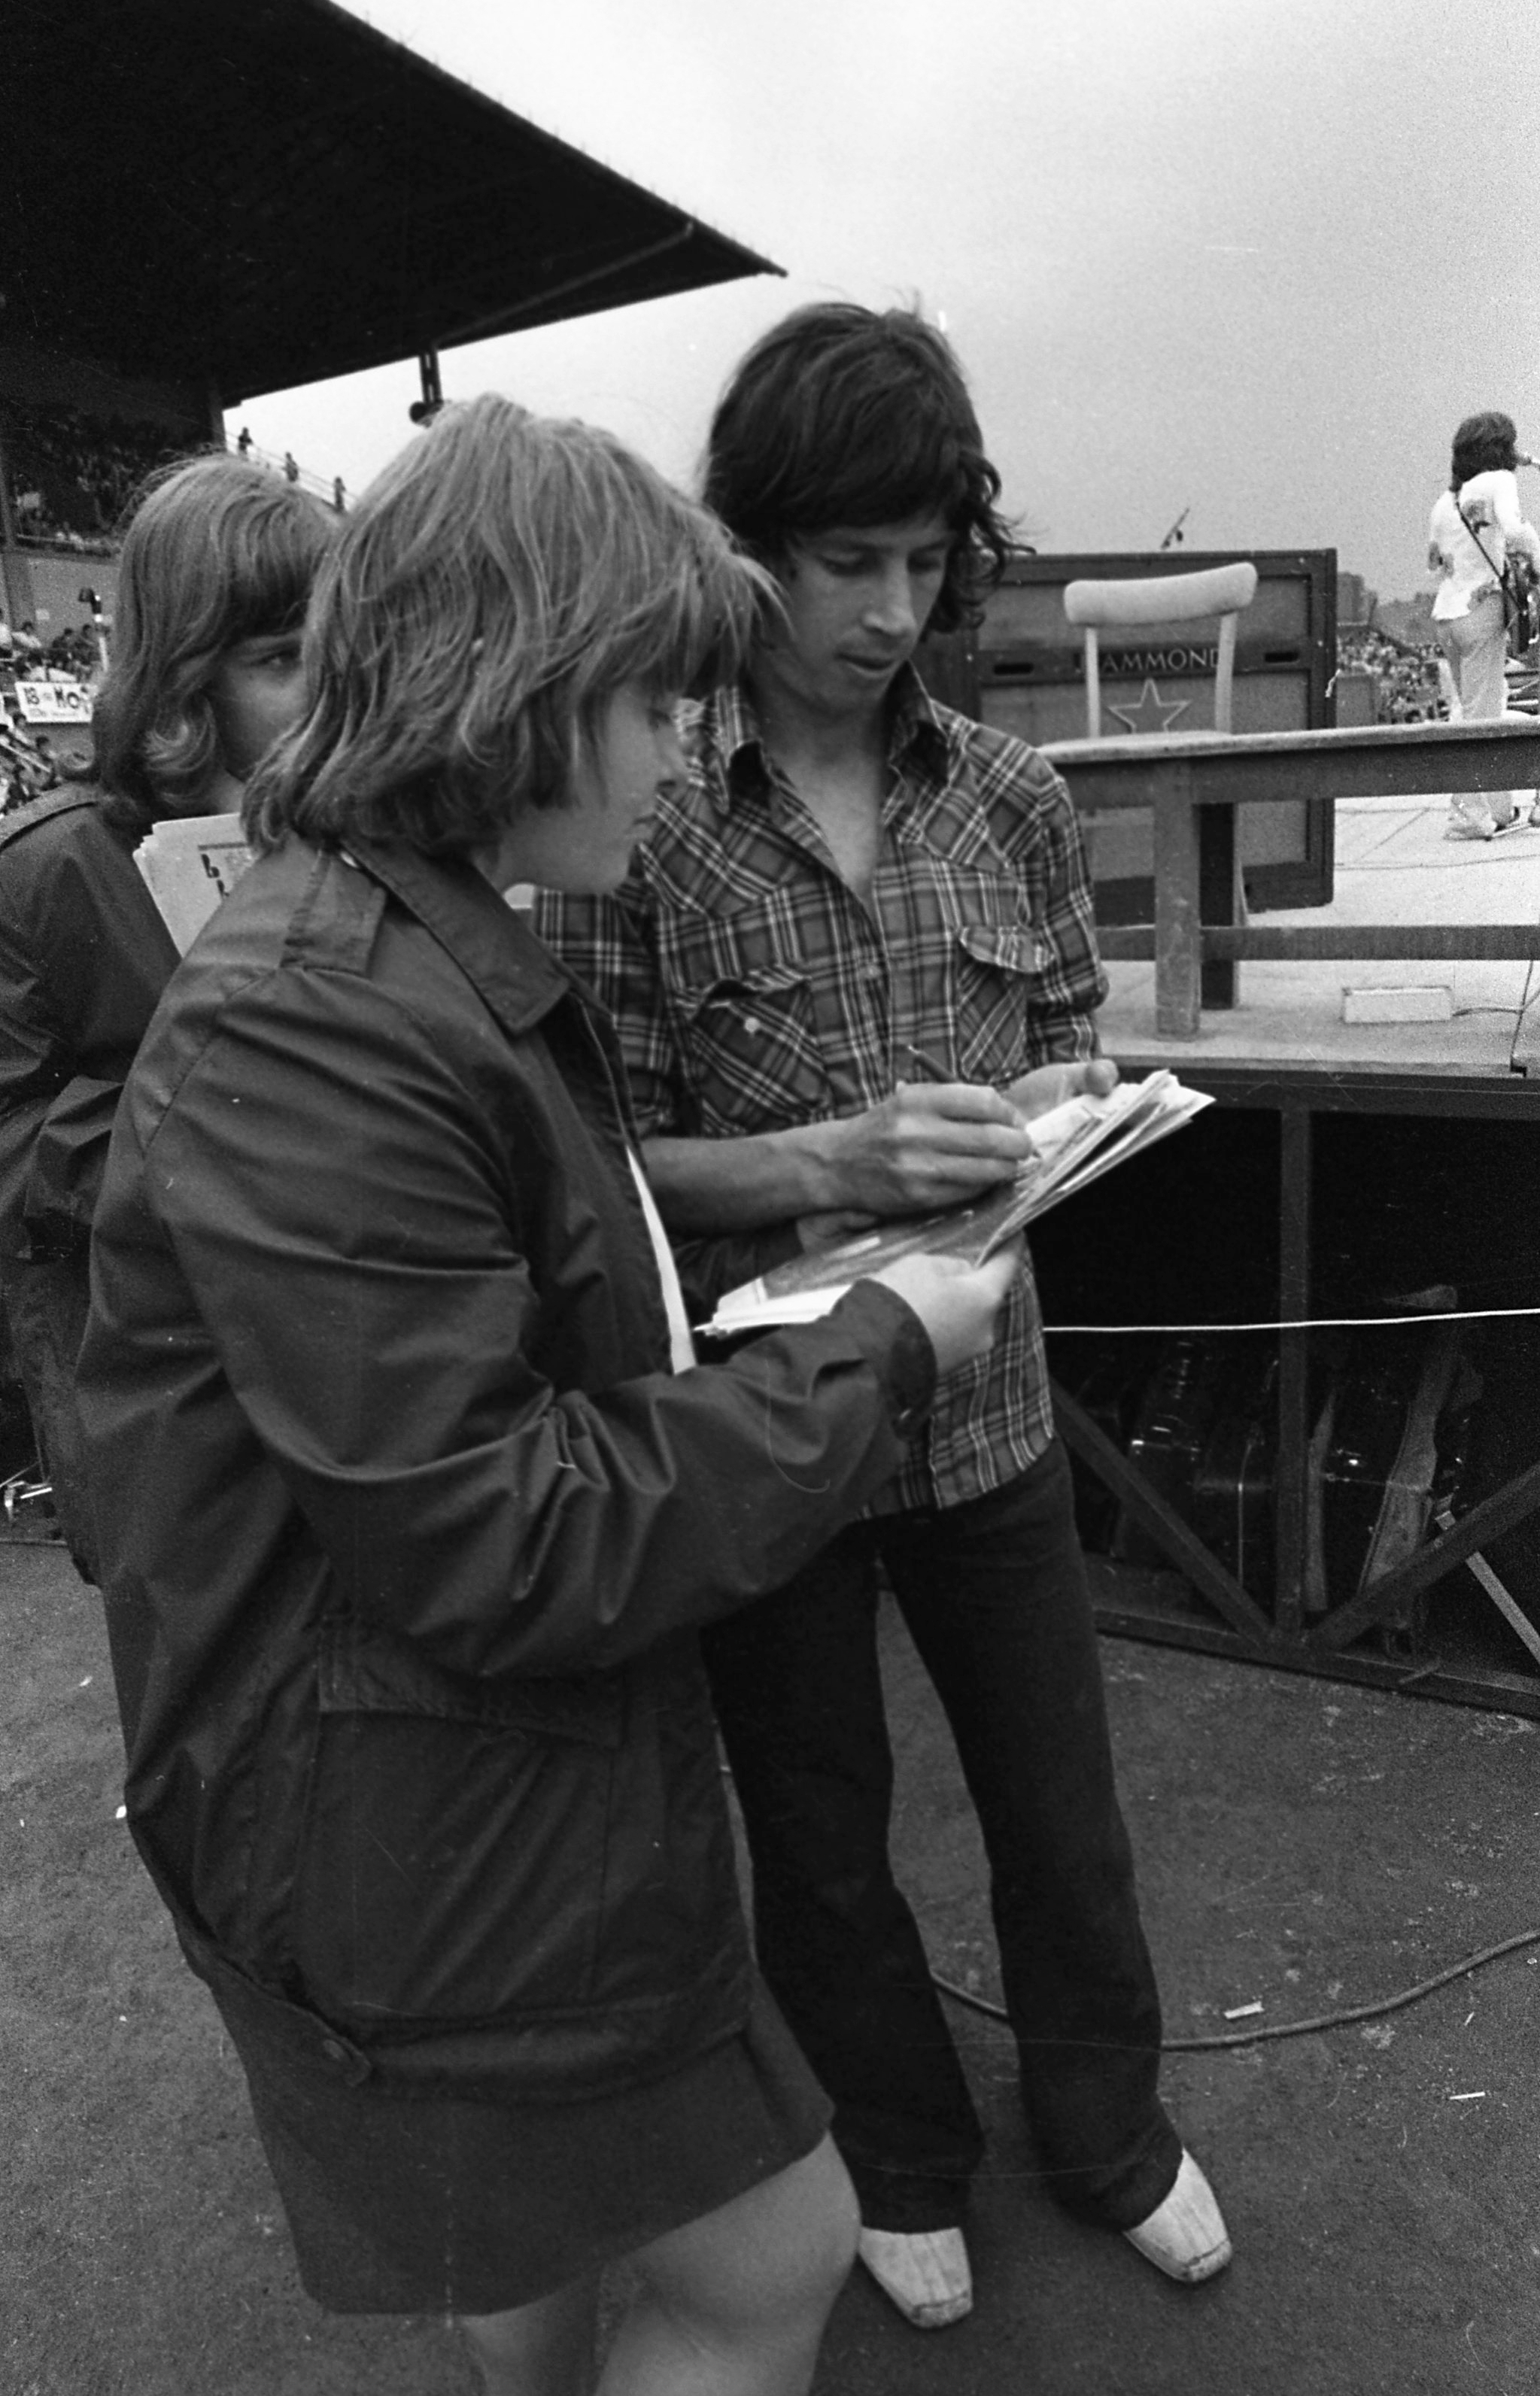 Bródy János autogramot ad ifjúgárdistáknak a DVTK-stadionban rendezett Rockfesztiválon 1973-ban.